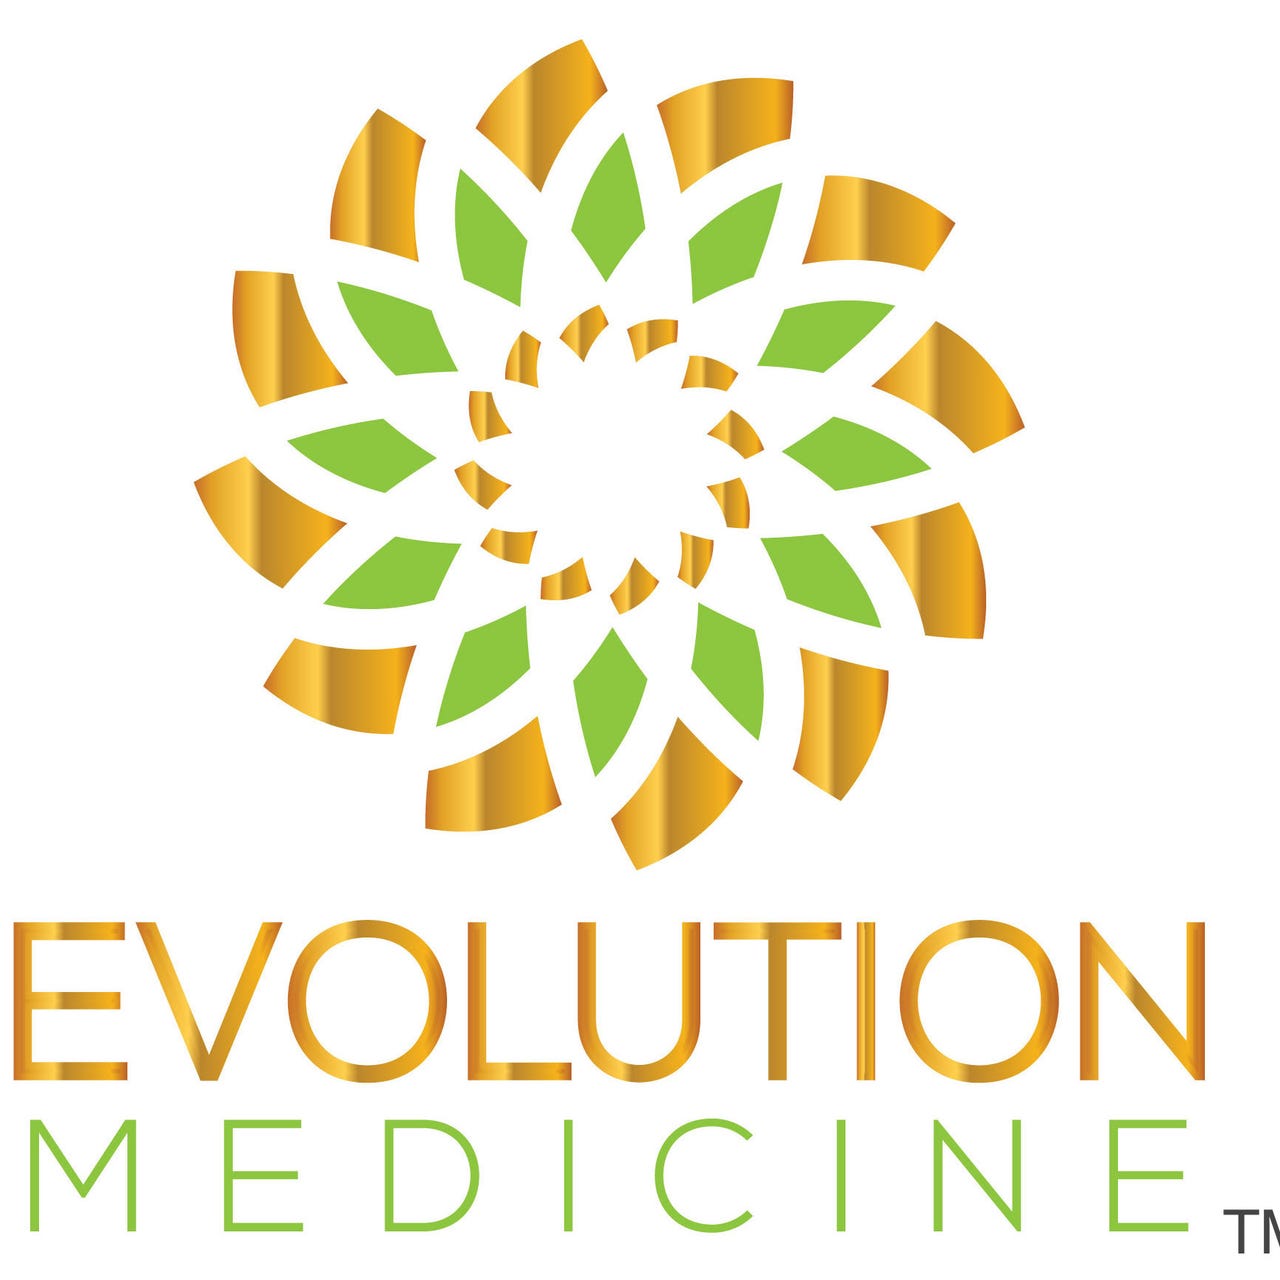 Evolution Medicine: Meditations